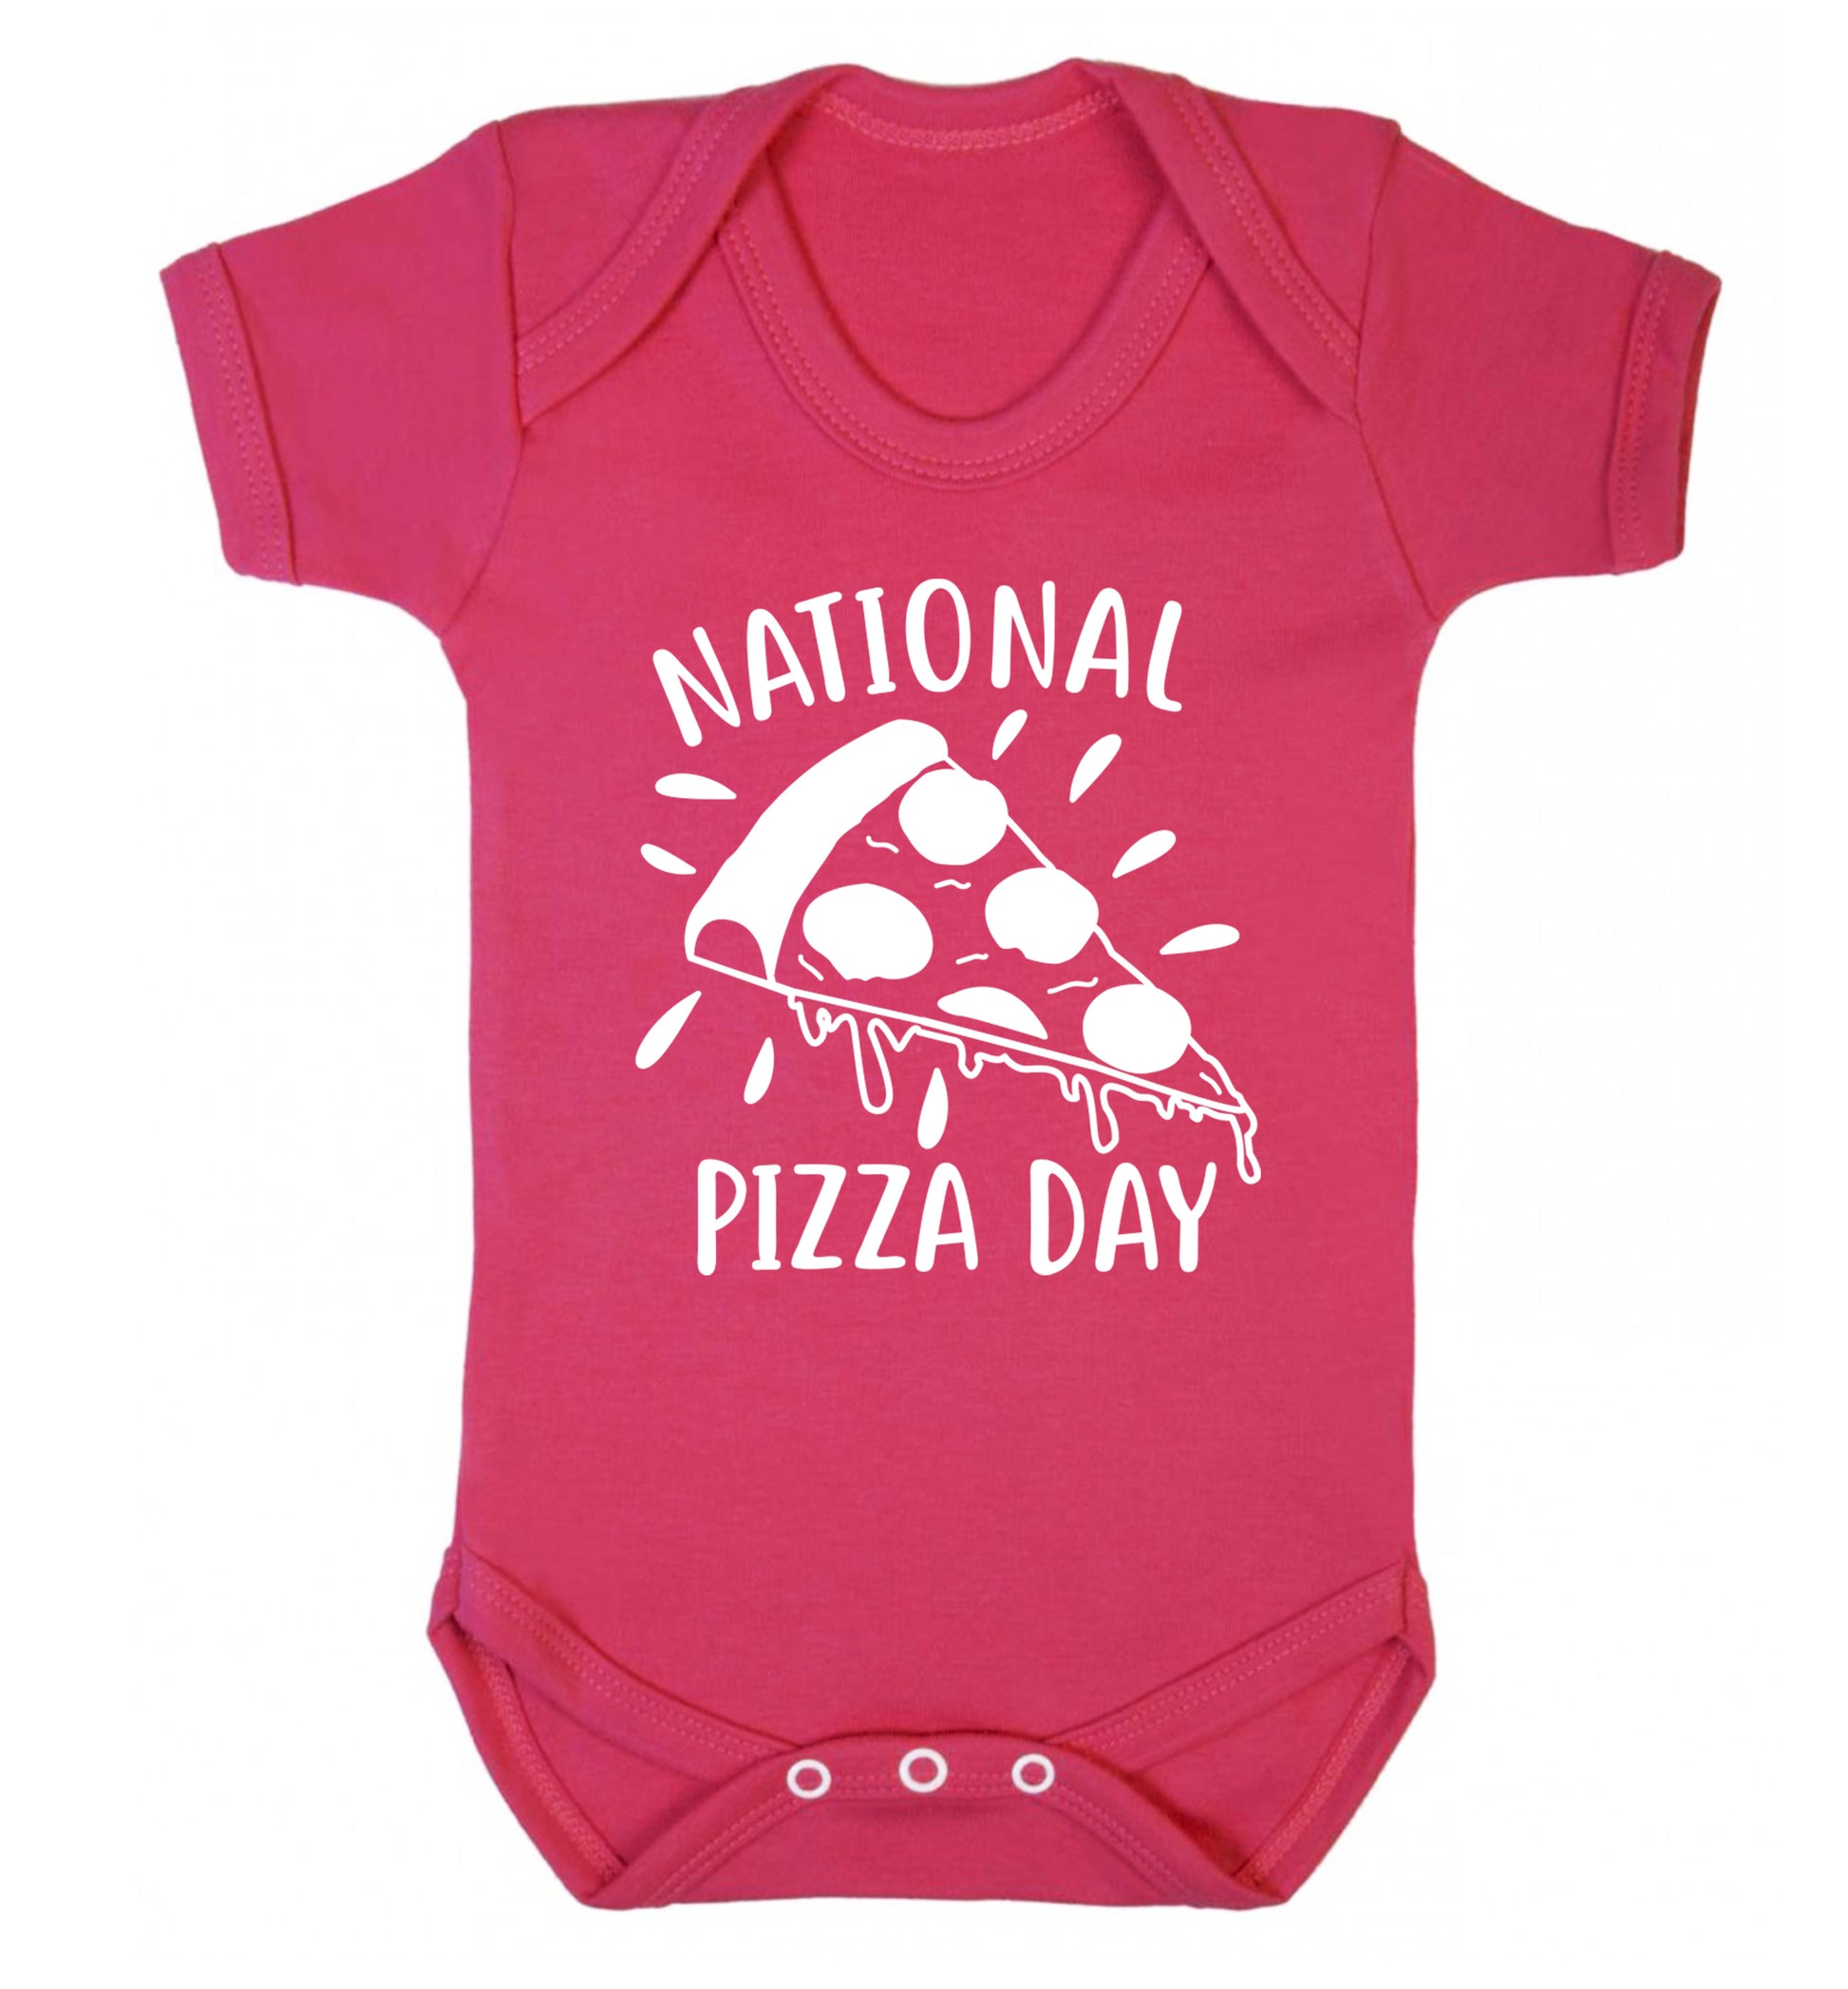 National pizza day Baby Vest dark pink 18-24 months